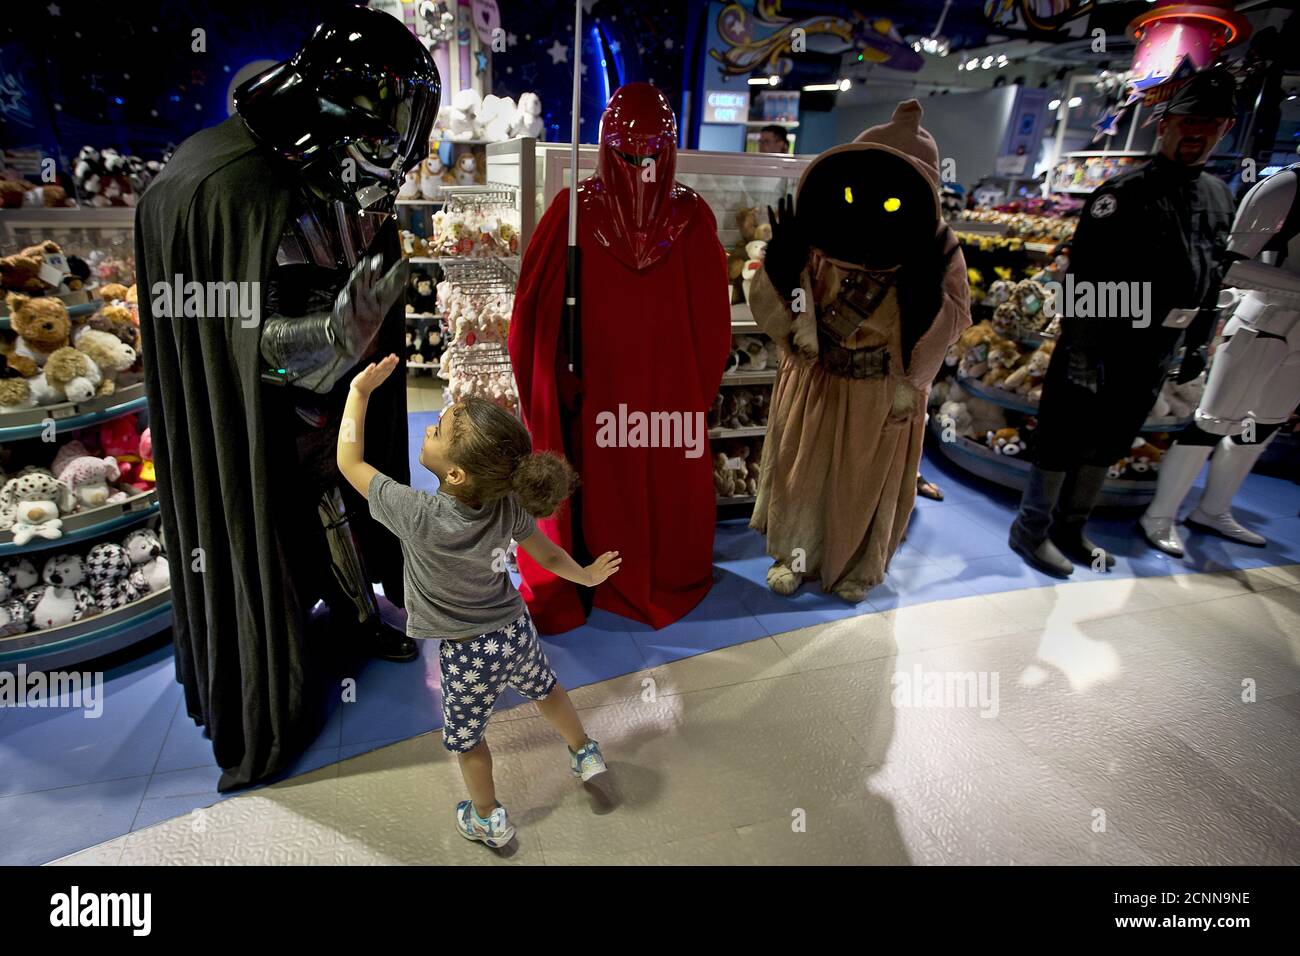 Un homme habillé comme Darth Vader de la haute 'Star Wars' five un enfant  alors que les gens arrivent pour acheter des jouets qui ont été mis en  vente à minuit avant